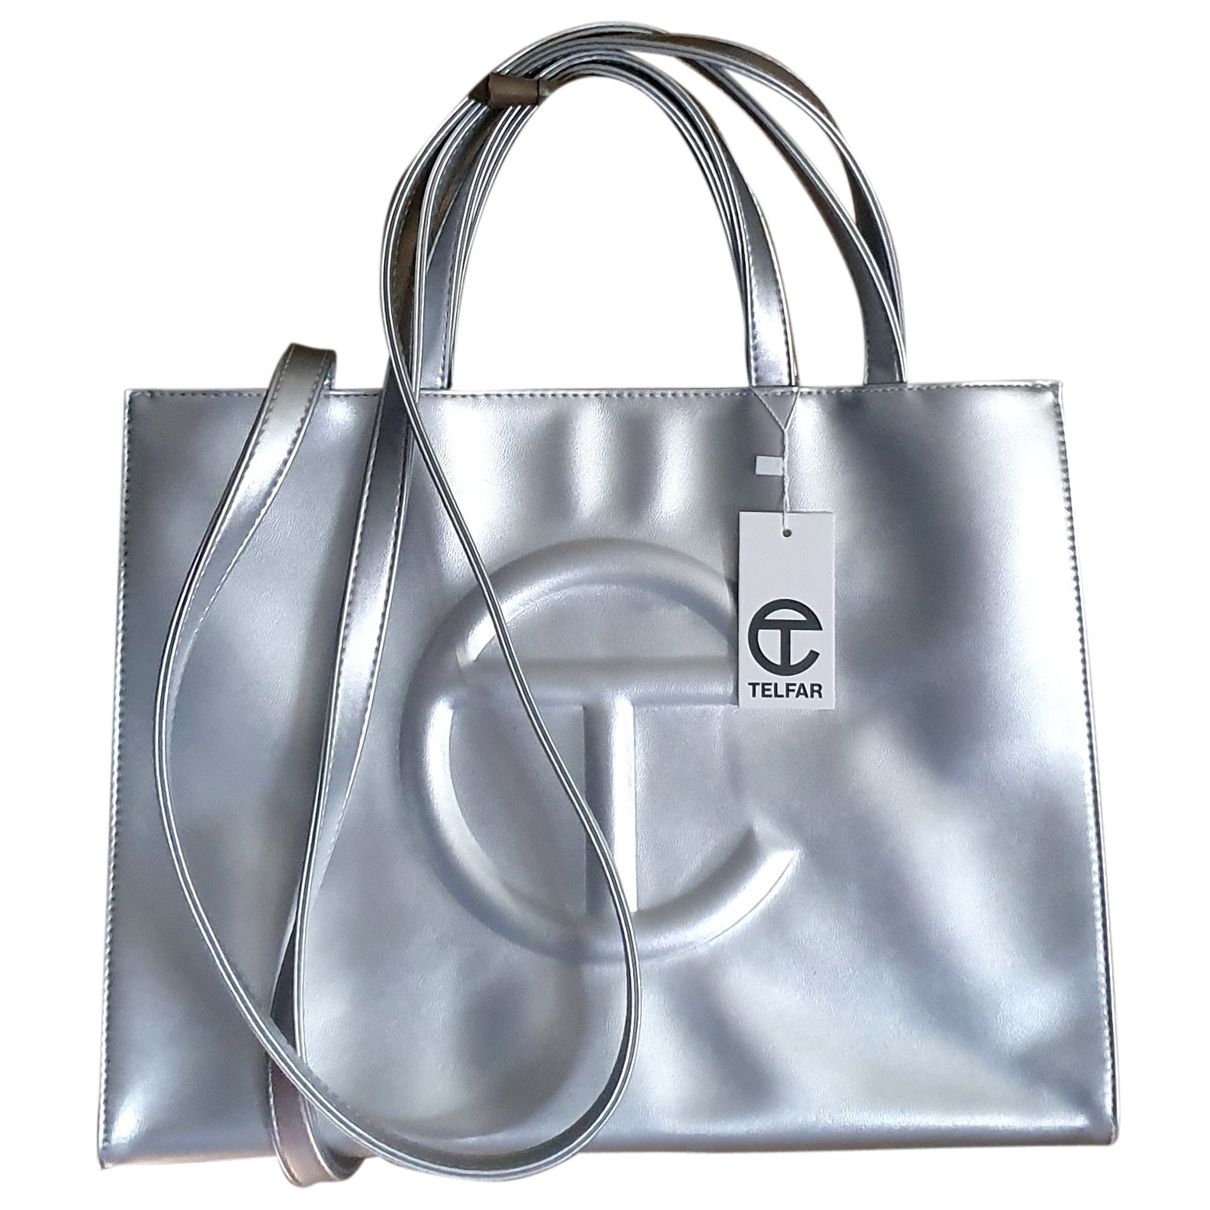 Telfar Silver Polyester Handbags | Vestiaire Collective (Global)